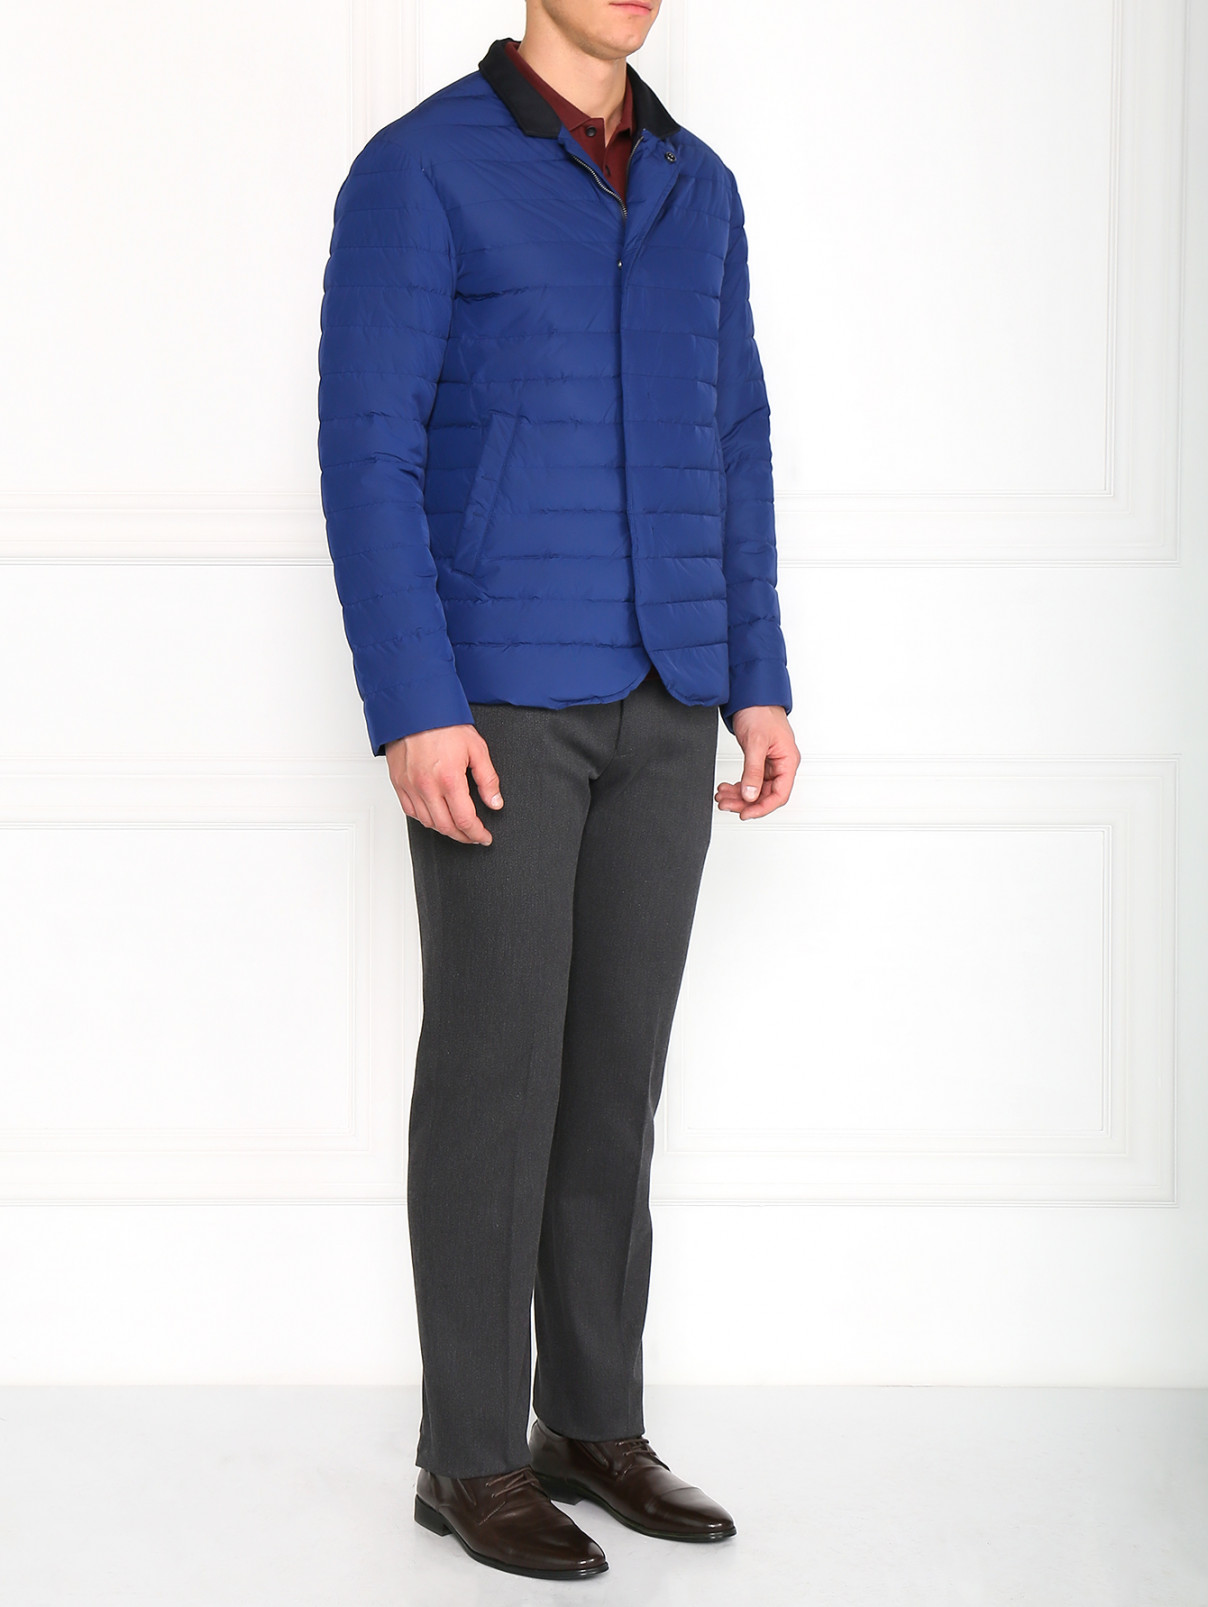 Пуховая куртка с контрастным воротом Armani Collezioni  –  Модель Общий вид  – Цвет:  Синий